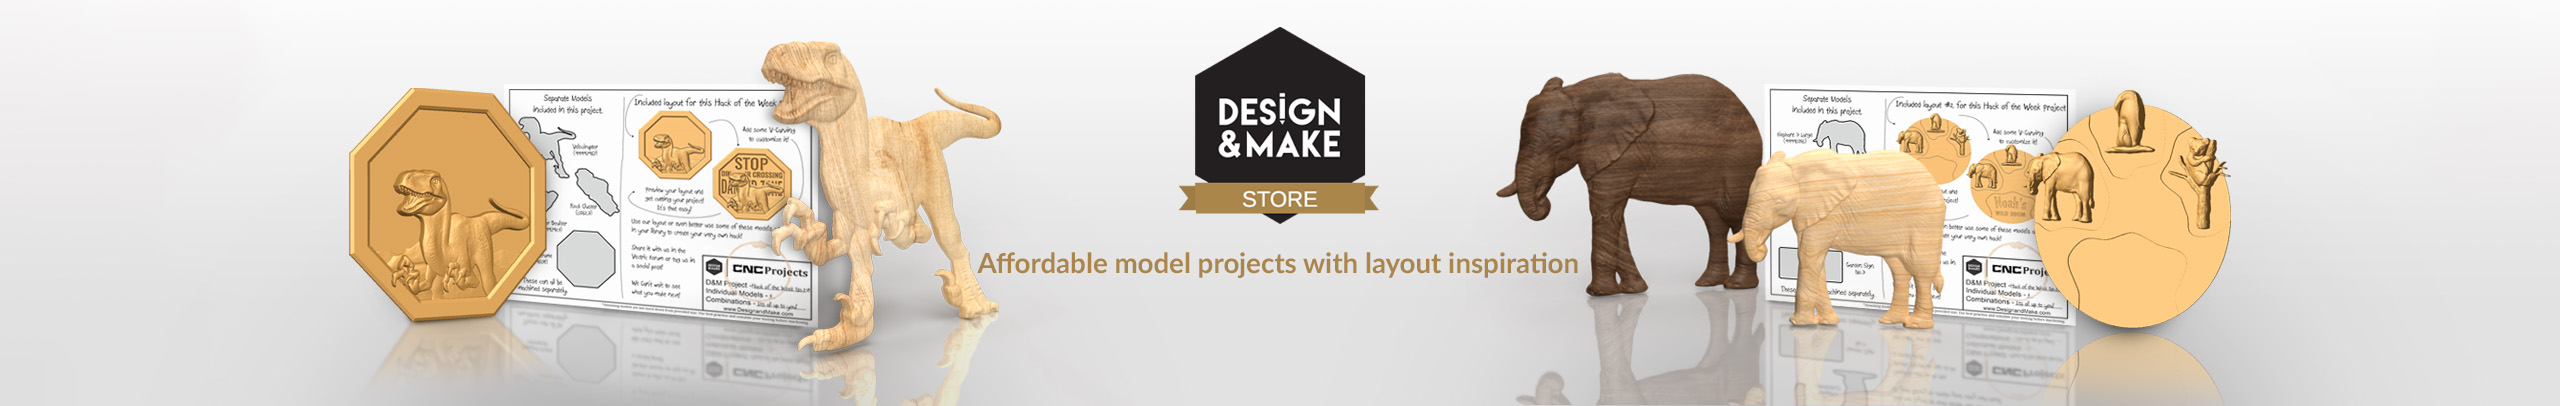 Design & Make banner